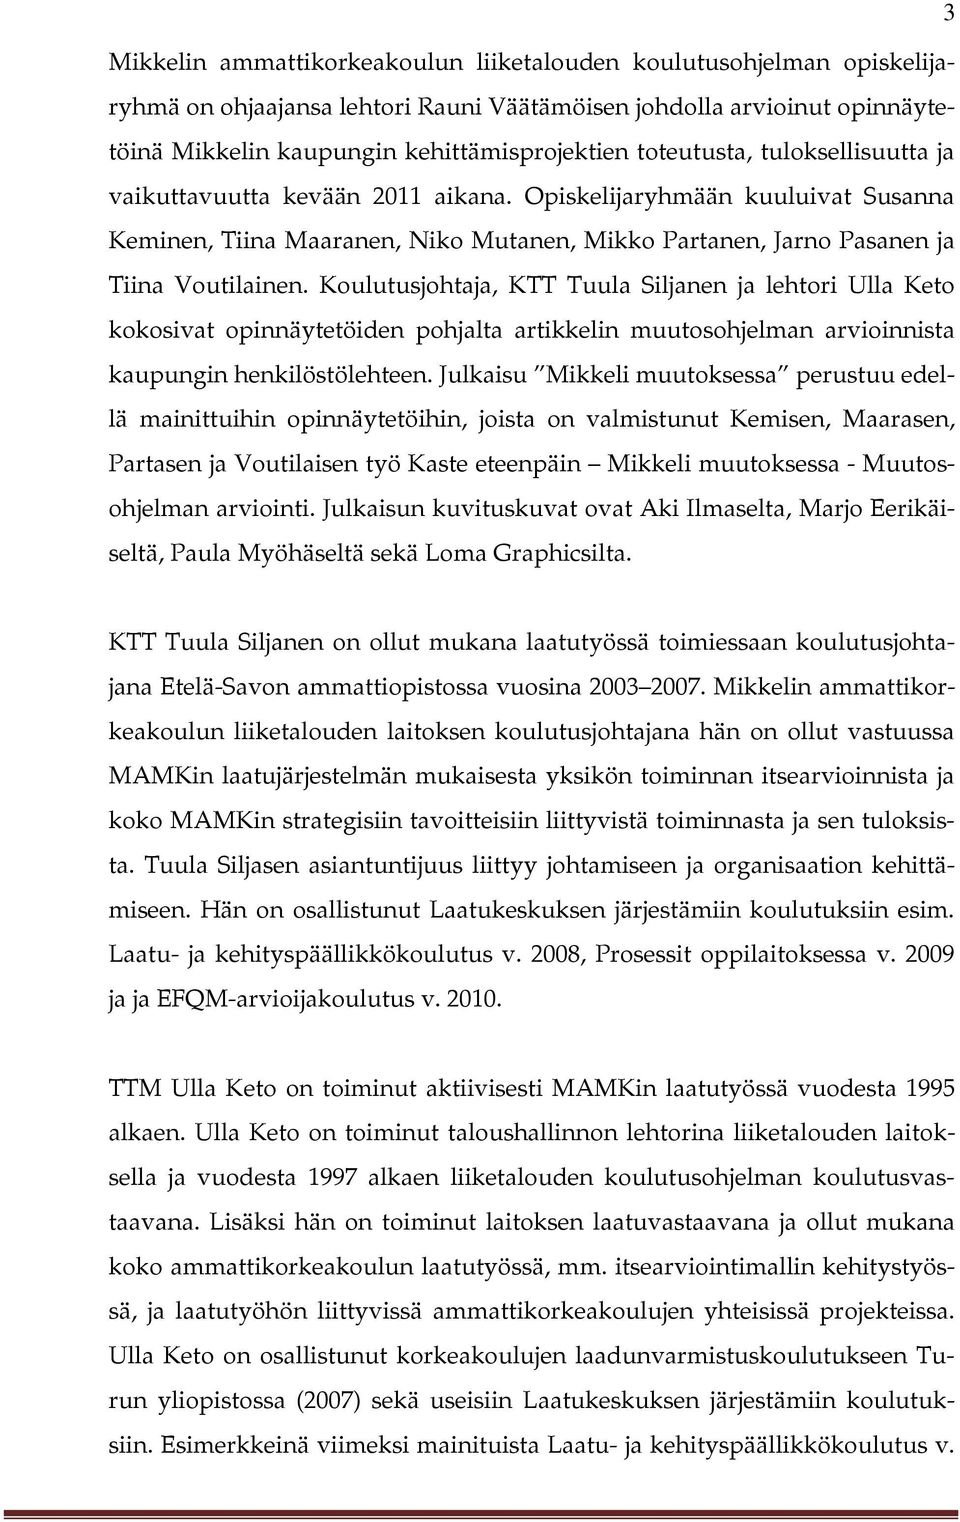 Koulutusjohtaja, KTT Tuula Siljanen ja lehtori Ulla Keto kokosivat opinnäytetöiden pohjalta artikkelin muutosohjelman arvioinnista kaupungin henkilöstölehteen.